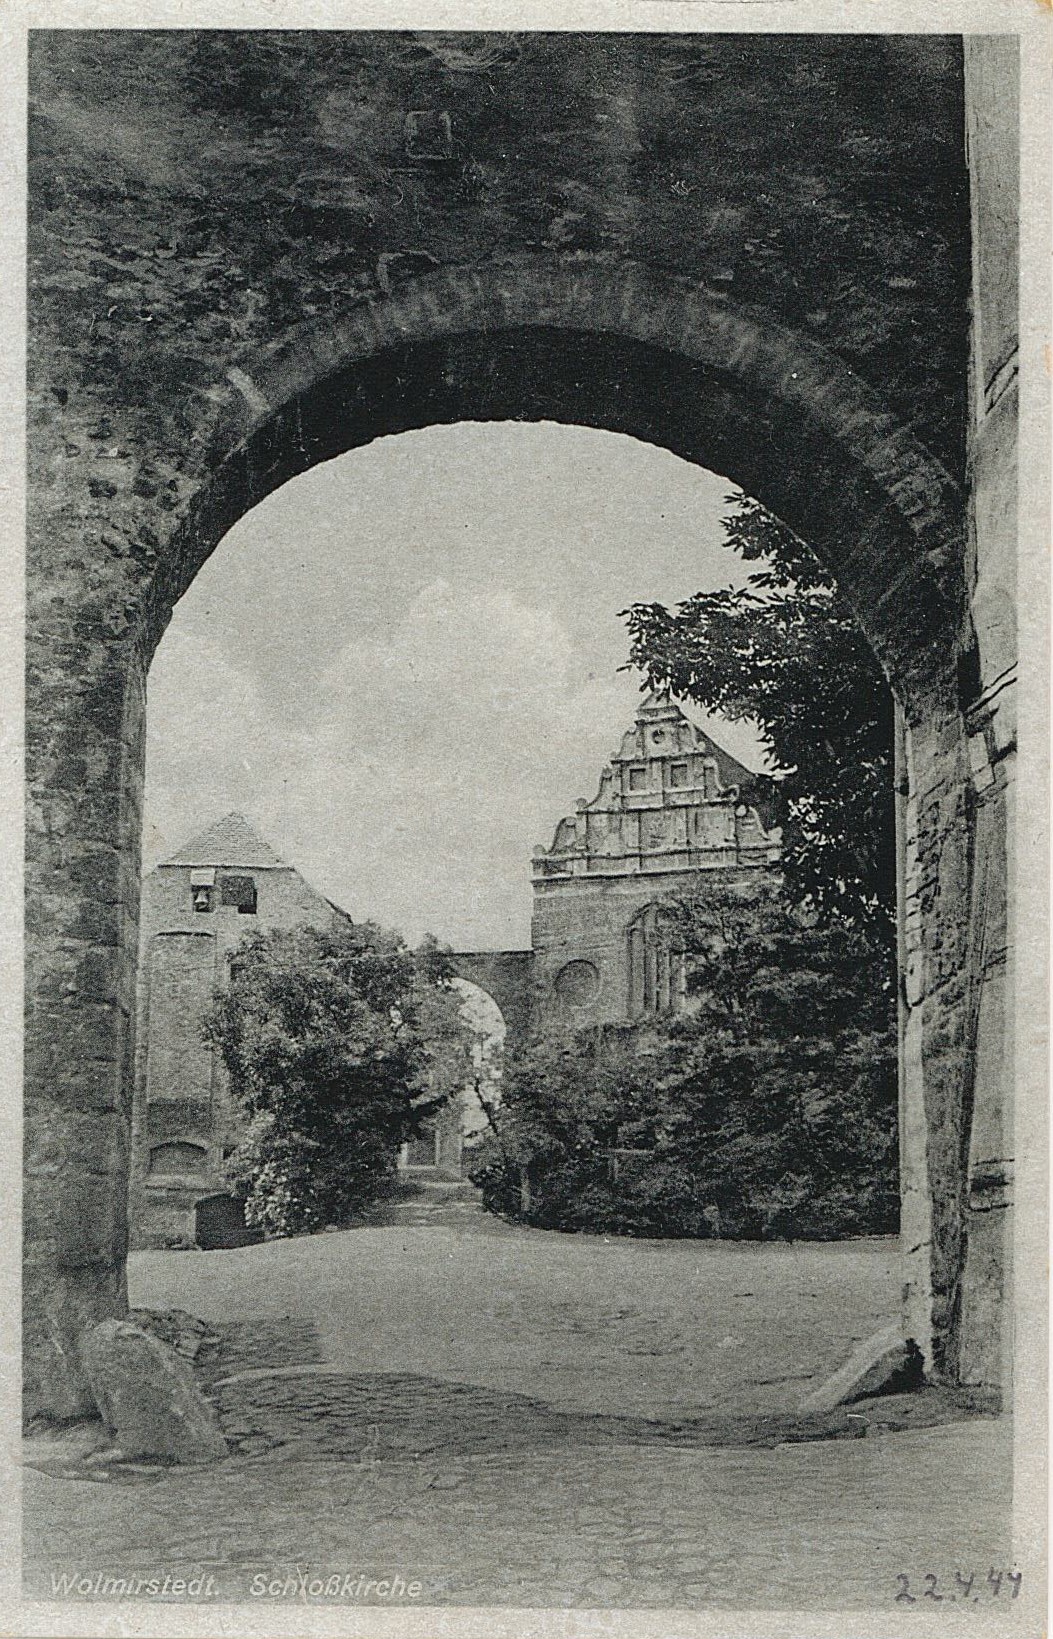 Postkarte "Wolmirstedt. Schloßkirche", 22.04.1944 (Museum Wolmirstedt RR-F)